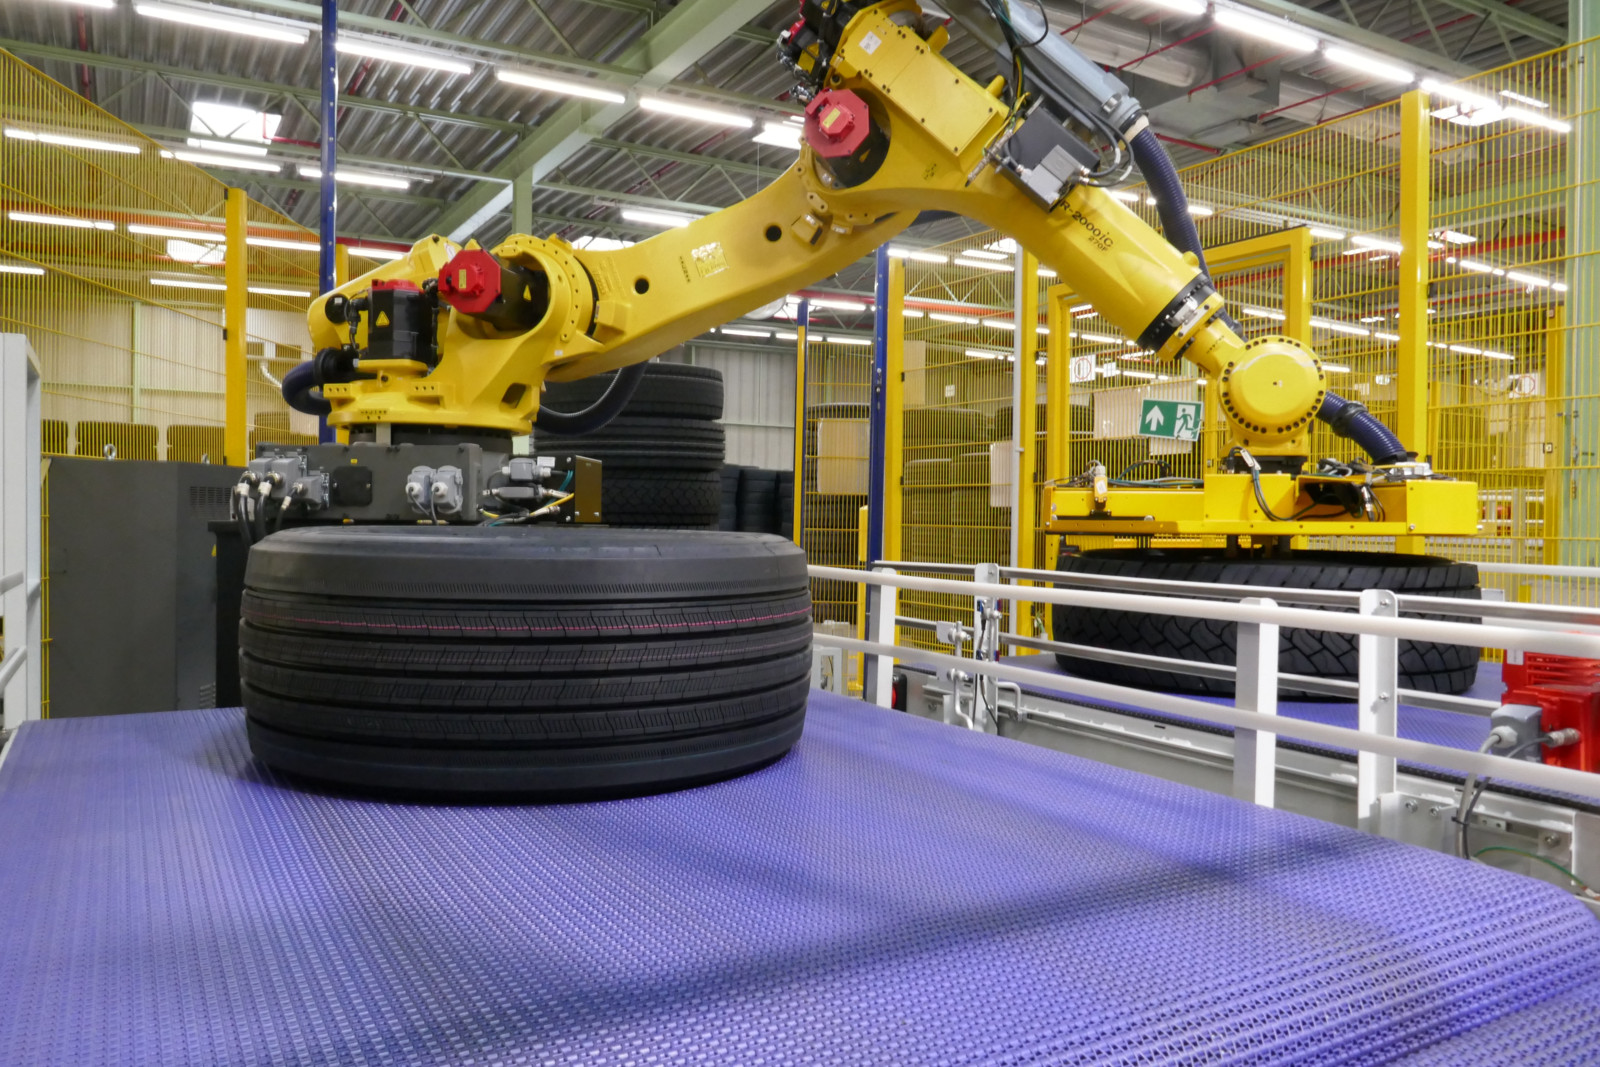 Die Roboterhände in Signalfarbe mussten erst ein Gefühl für die verschiedenen Reifen und Räder entwickeln: Die Programmierung mit Sicherheitsparametern war eine wichtige Voraussetzung für den erfolgreichen Hochlauf der MAN-Montagelinie zwischen September und Dezember 2018.